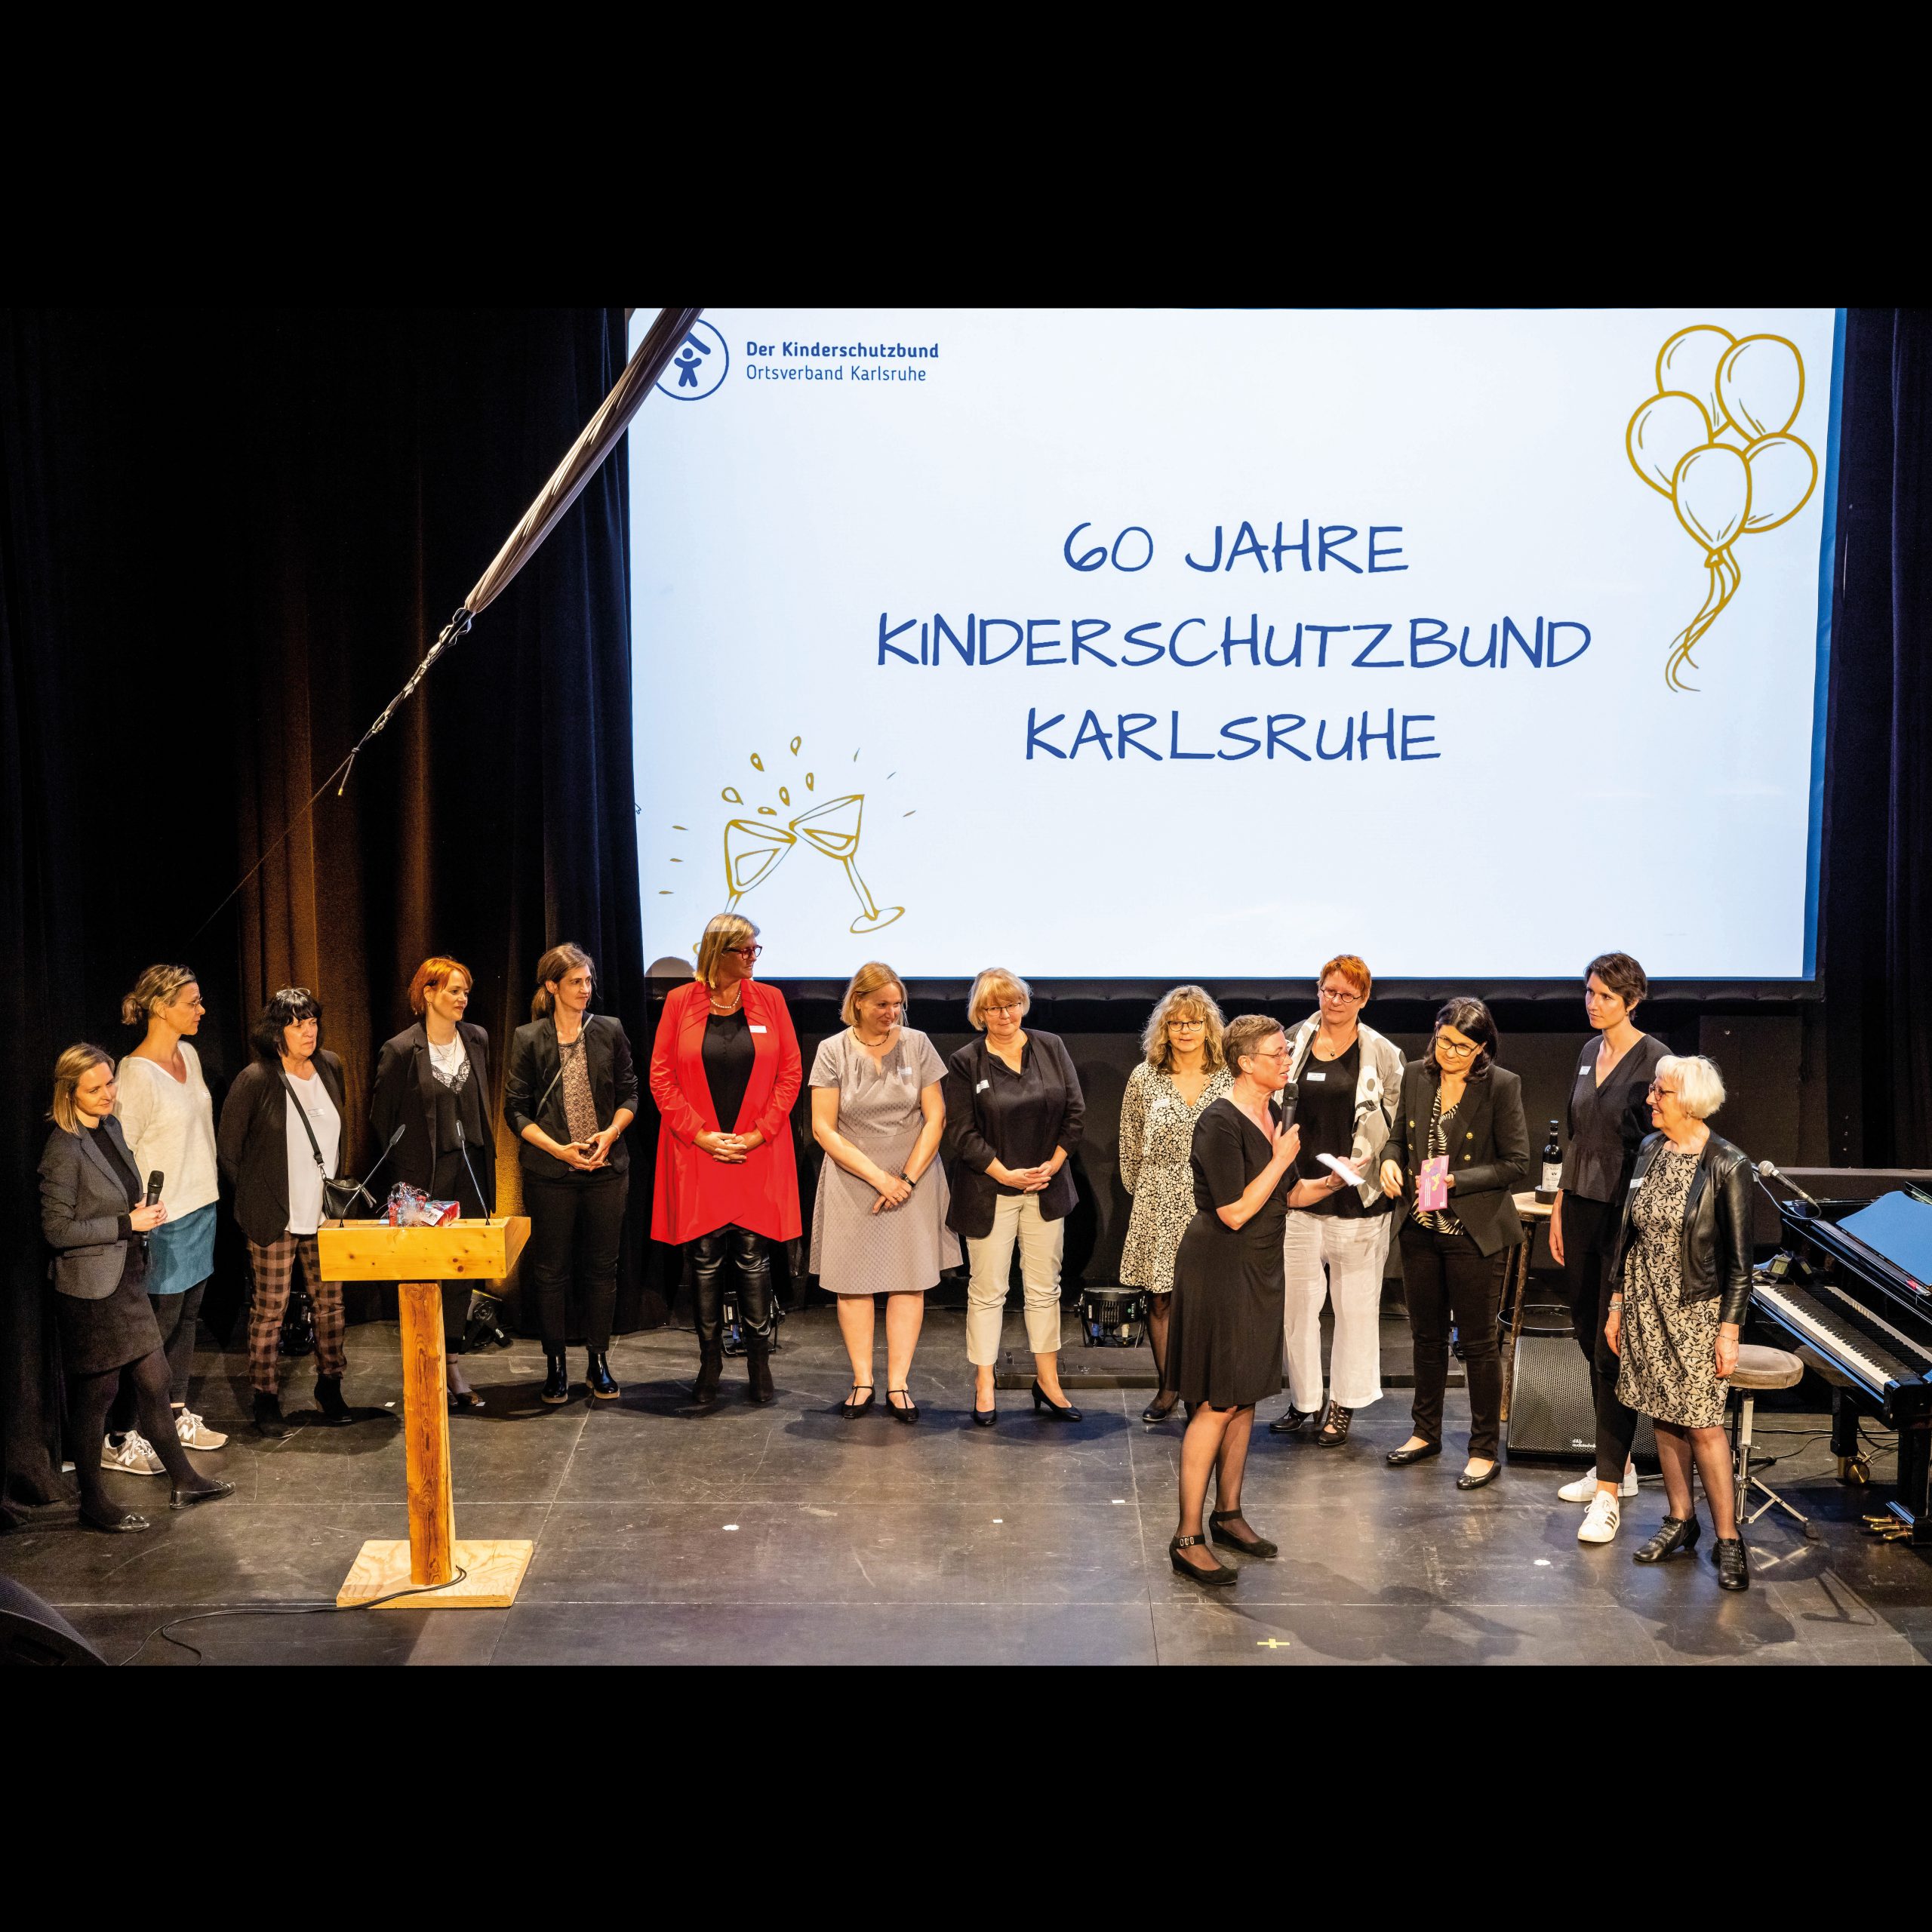 Kinderschutzbund Karlsruhe  feiert 60. Jubiläum